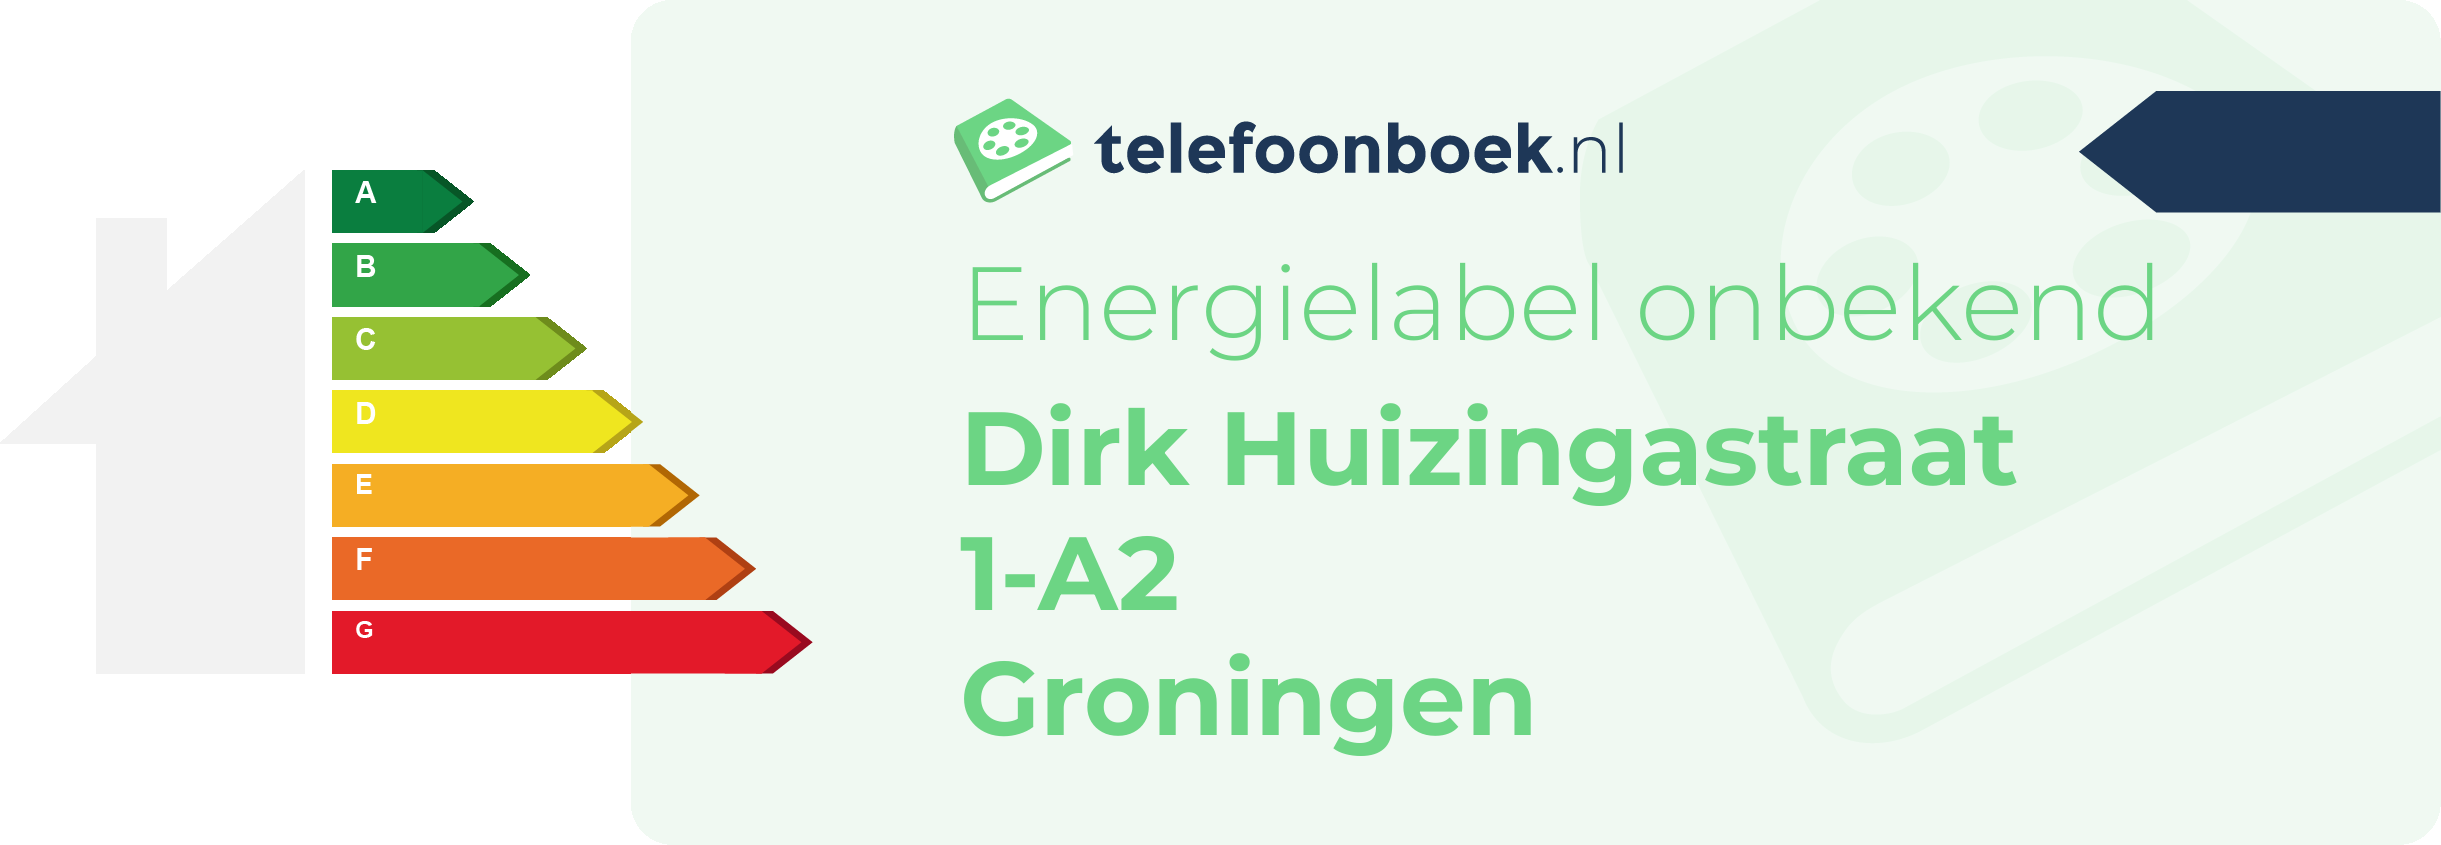 Energielabel Dirk Huizingastraat 1-A2 Groningen